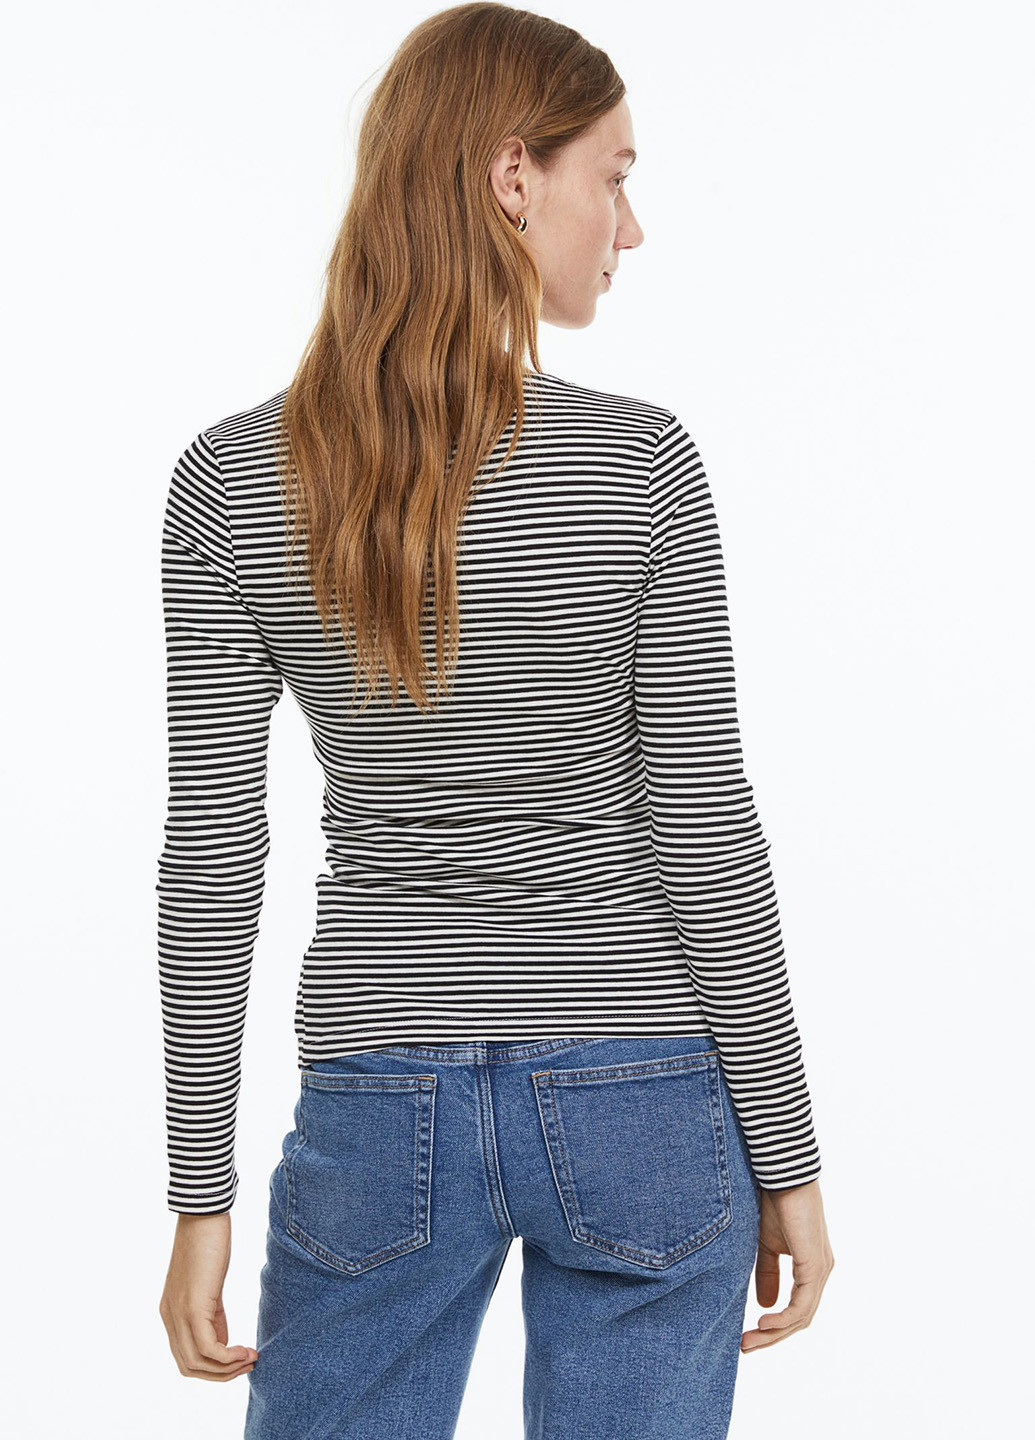 Черно-белый демисезонный пуловер для беременных пуловер H&M